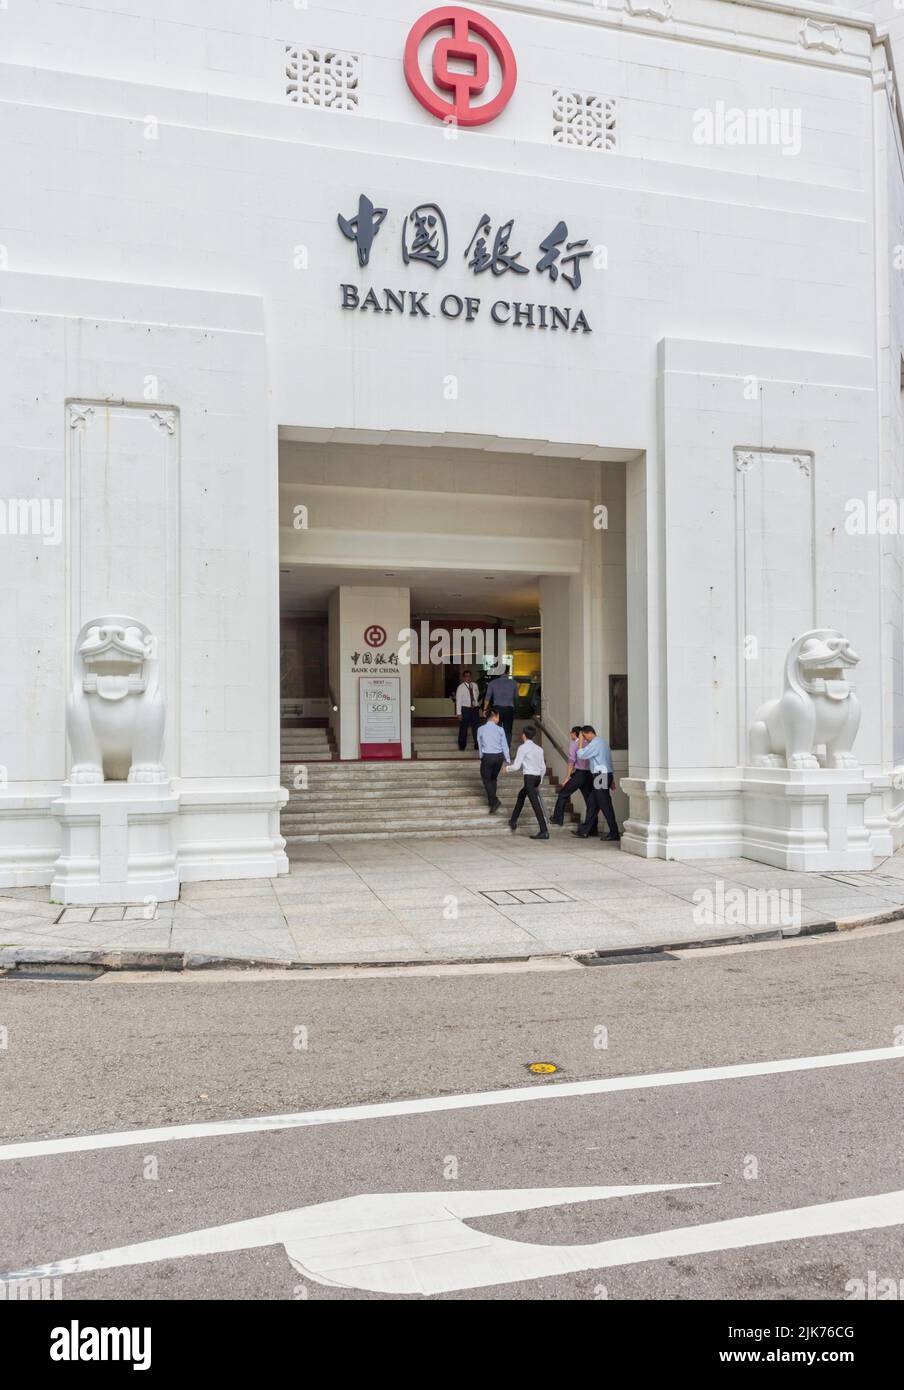 Bank of China, Battery Road, Singapore. L'edificio modernista risale al 1954 ed è stato progettato da Palmer e Turner di Hong Kong. I leoni di protezione Foto Stock